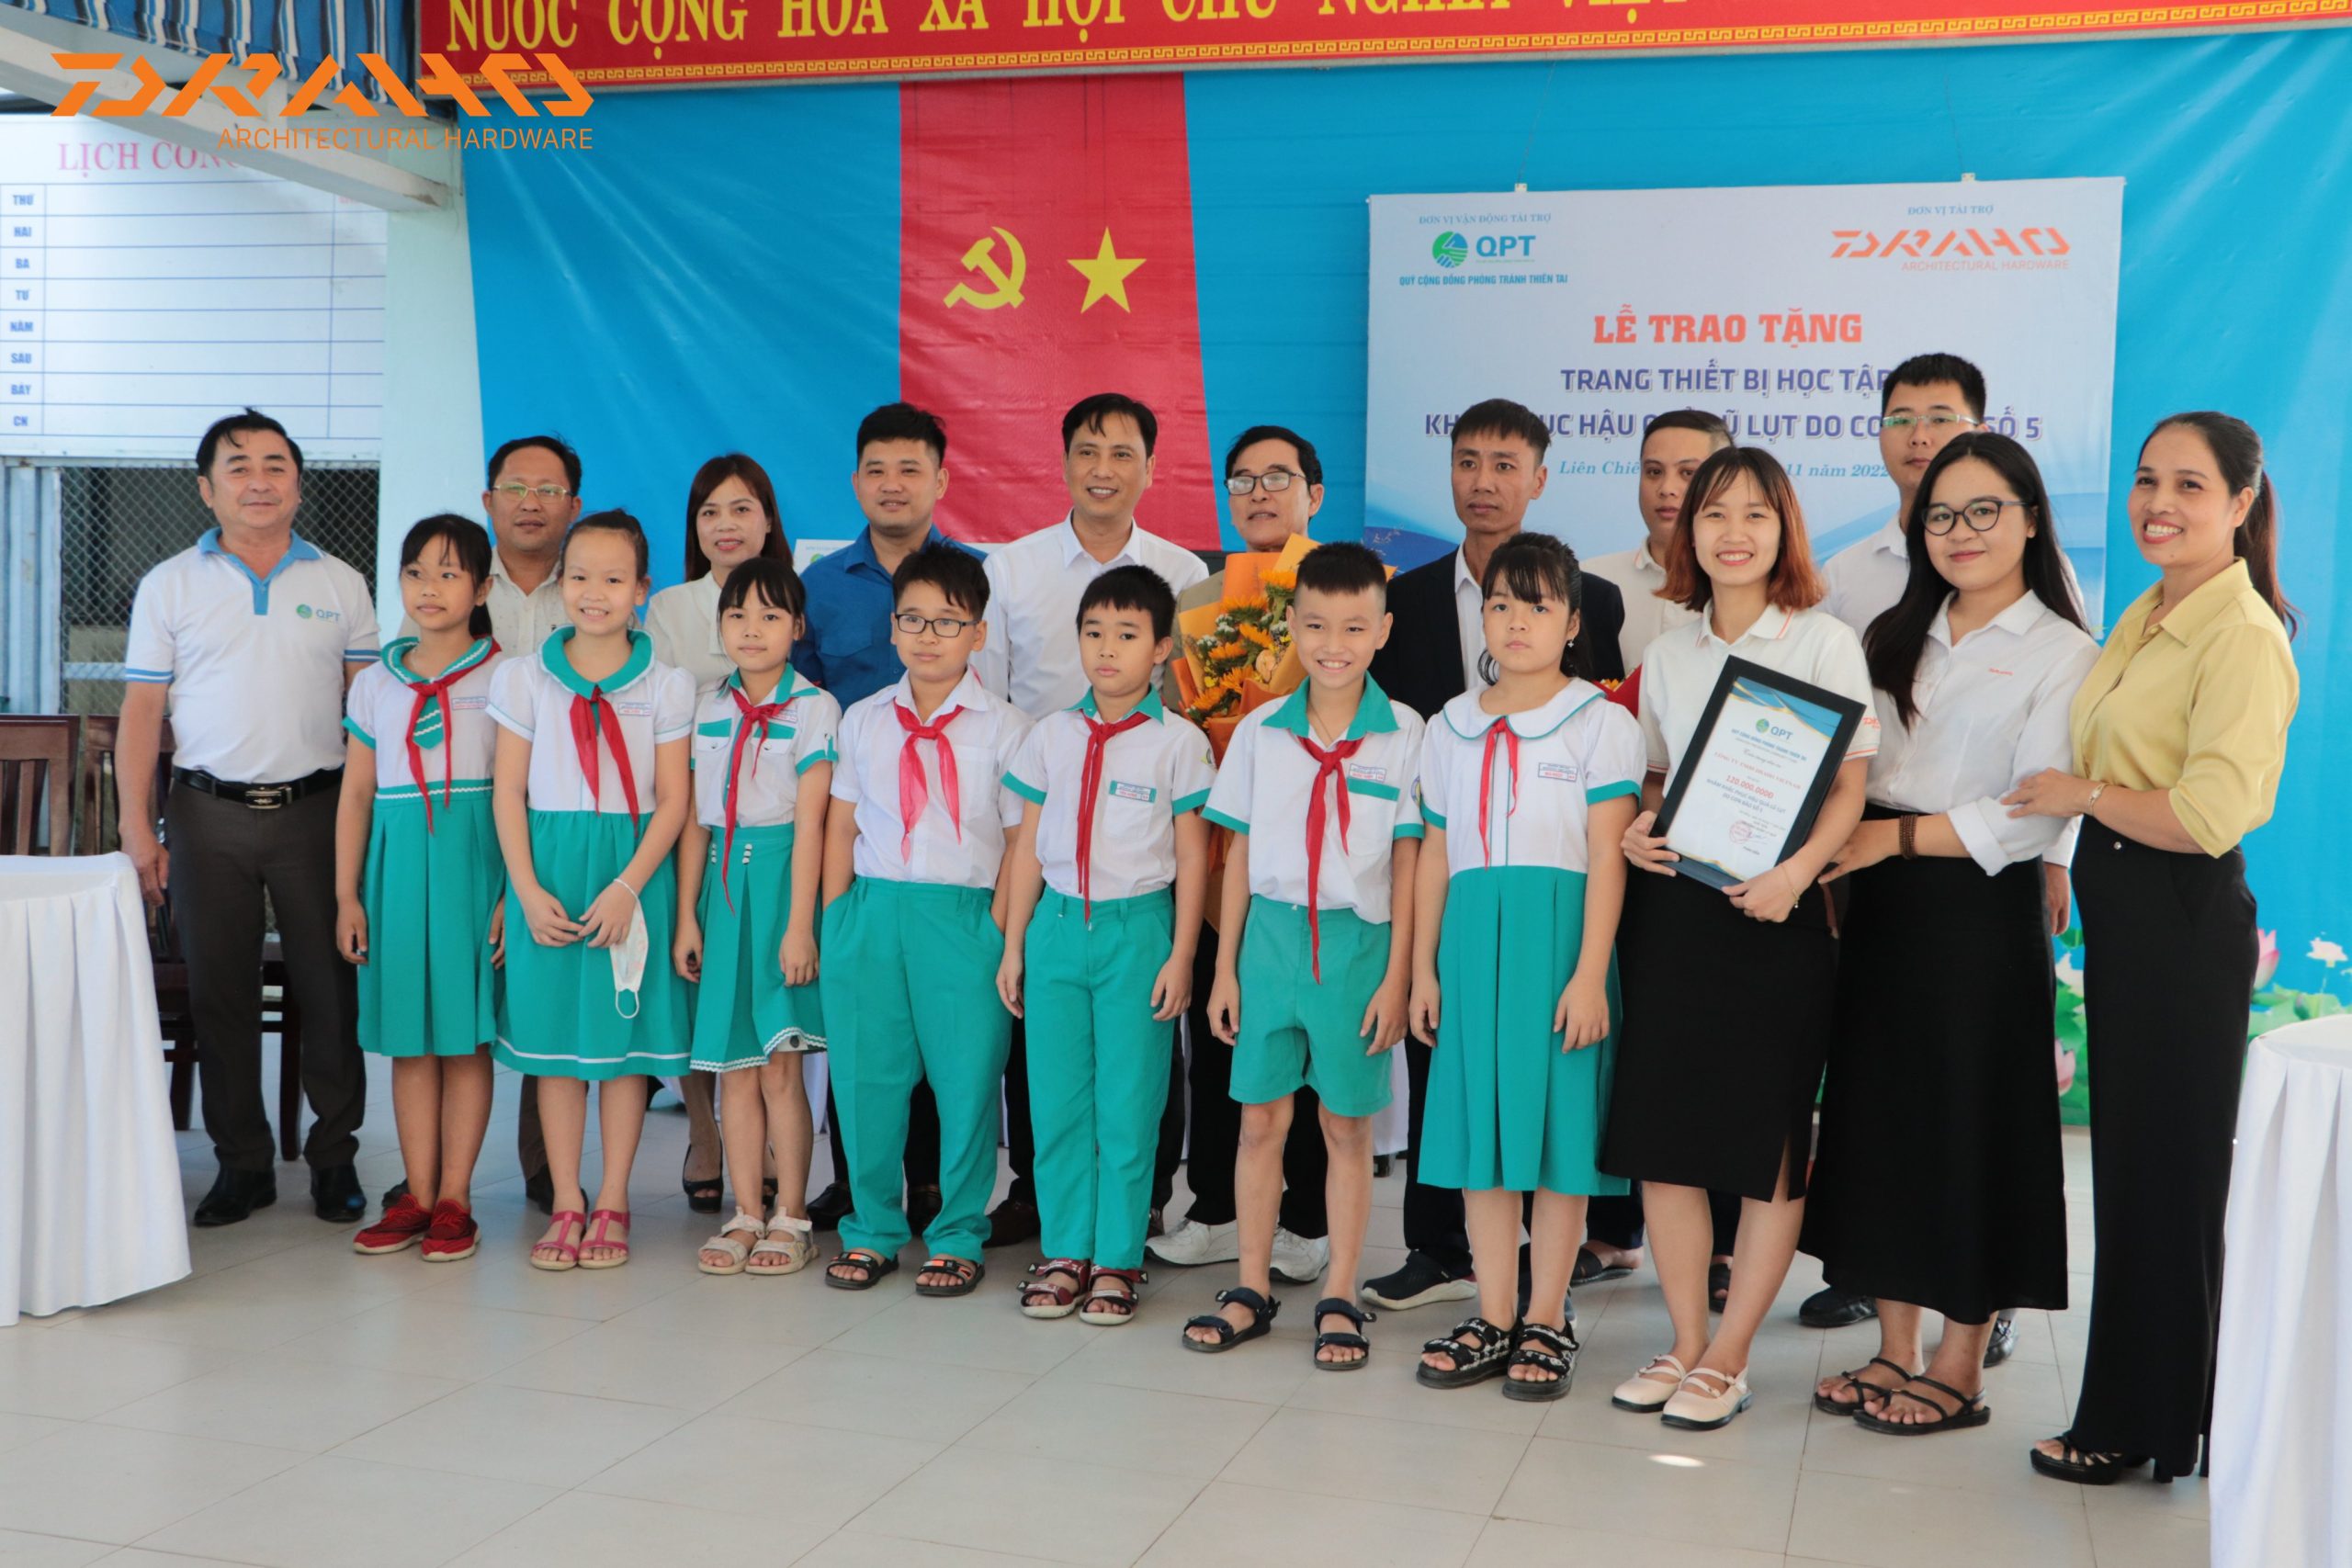 Thầy và trò trường tiểu học Hồng Quang vui vẻ, rạng rỡ trong buổi trao tặng.